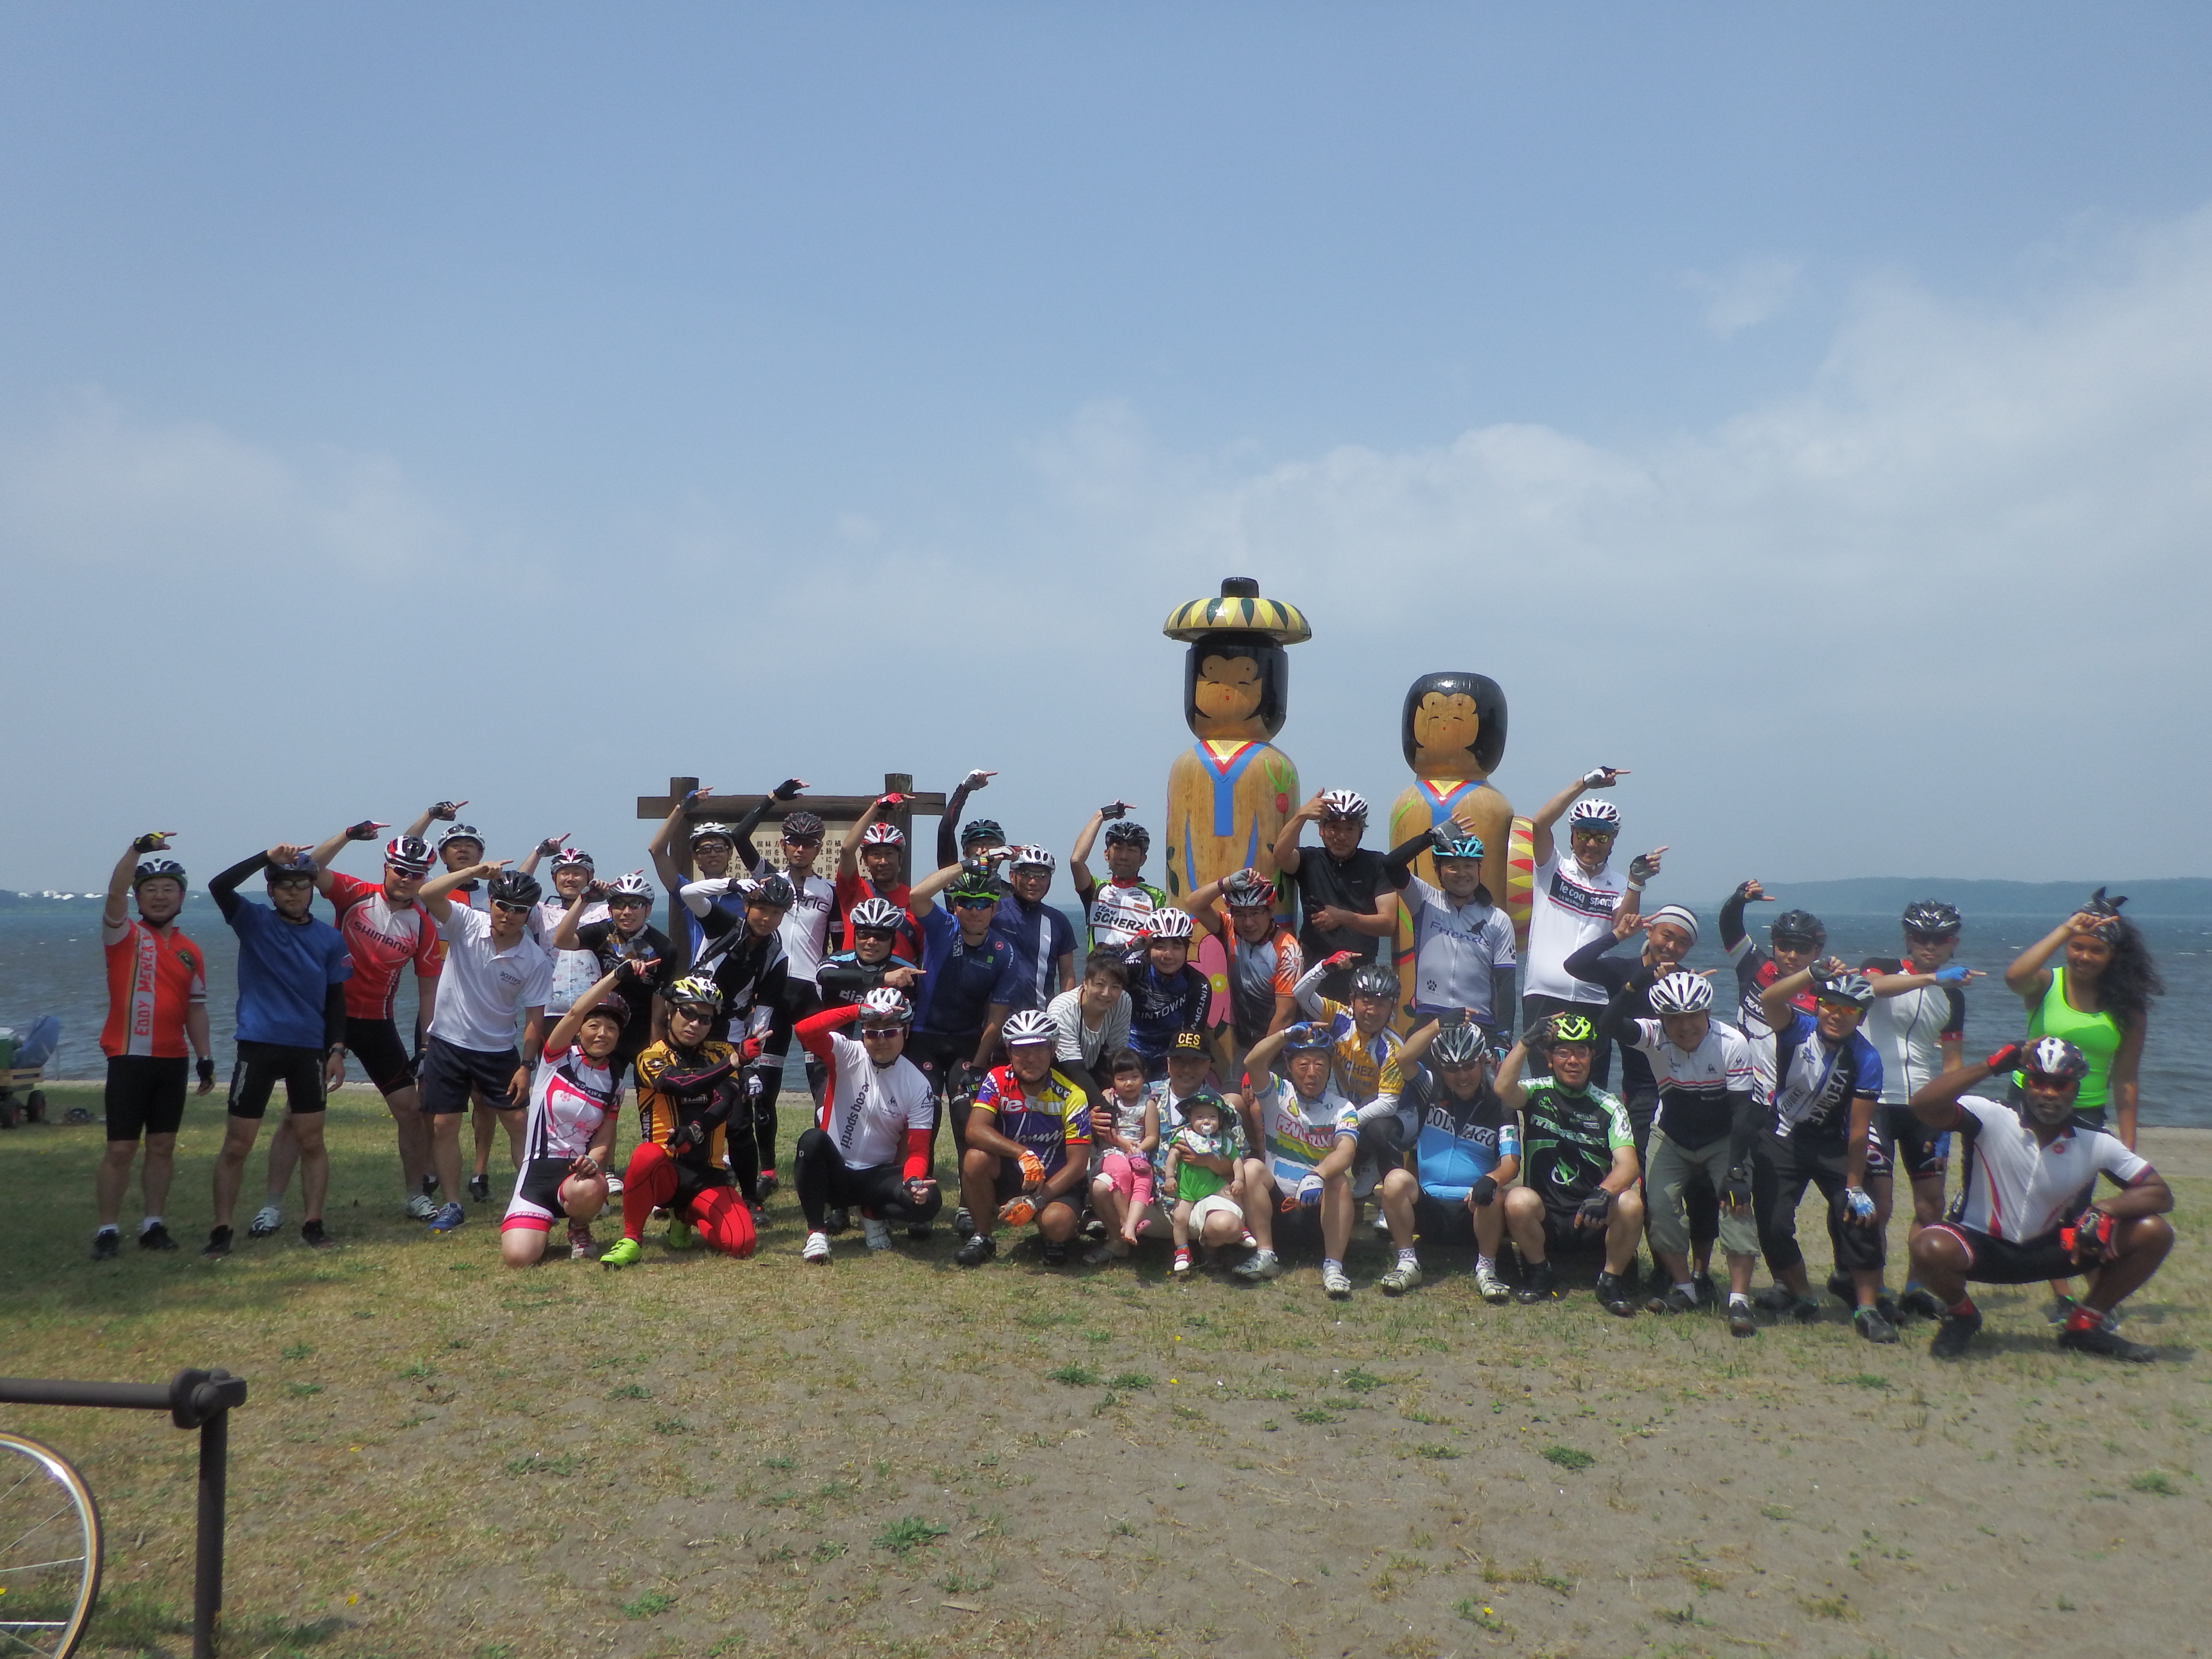 【開催中止】日本国青森県小川原湖一周サイクリング「2020夏の陣」